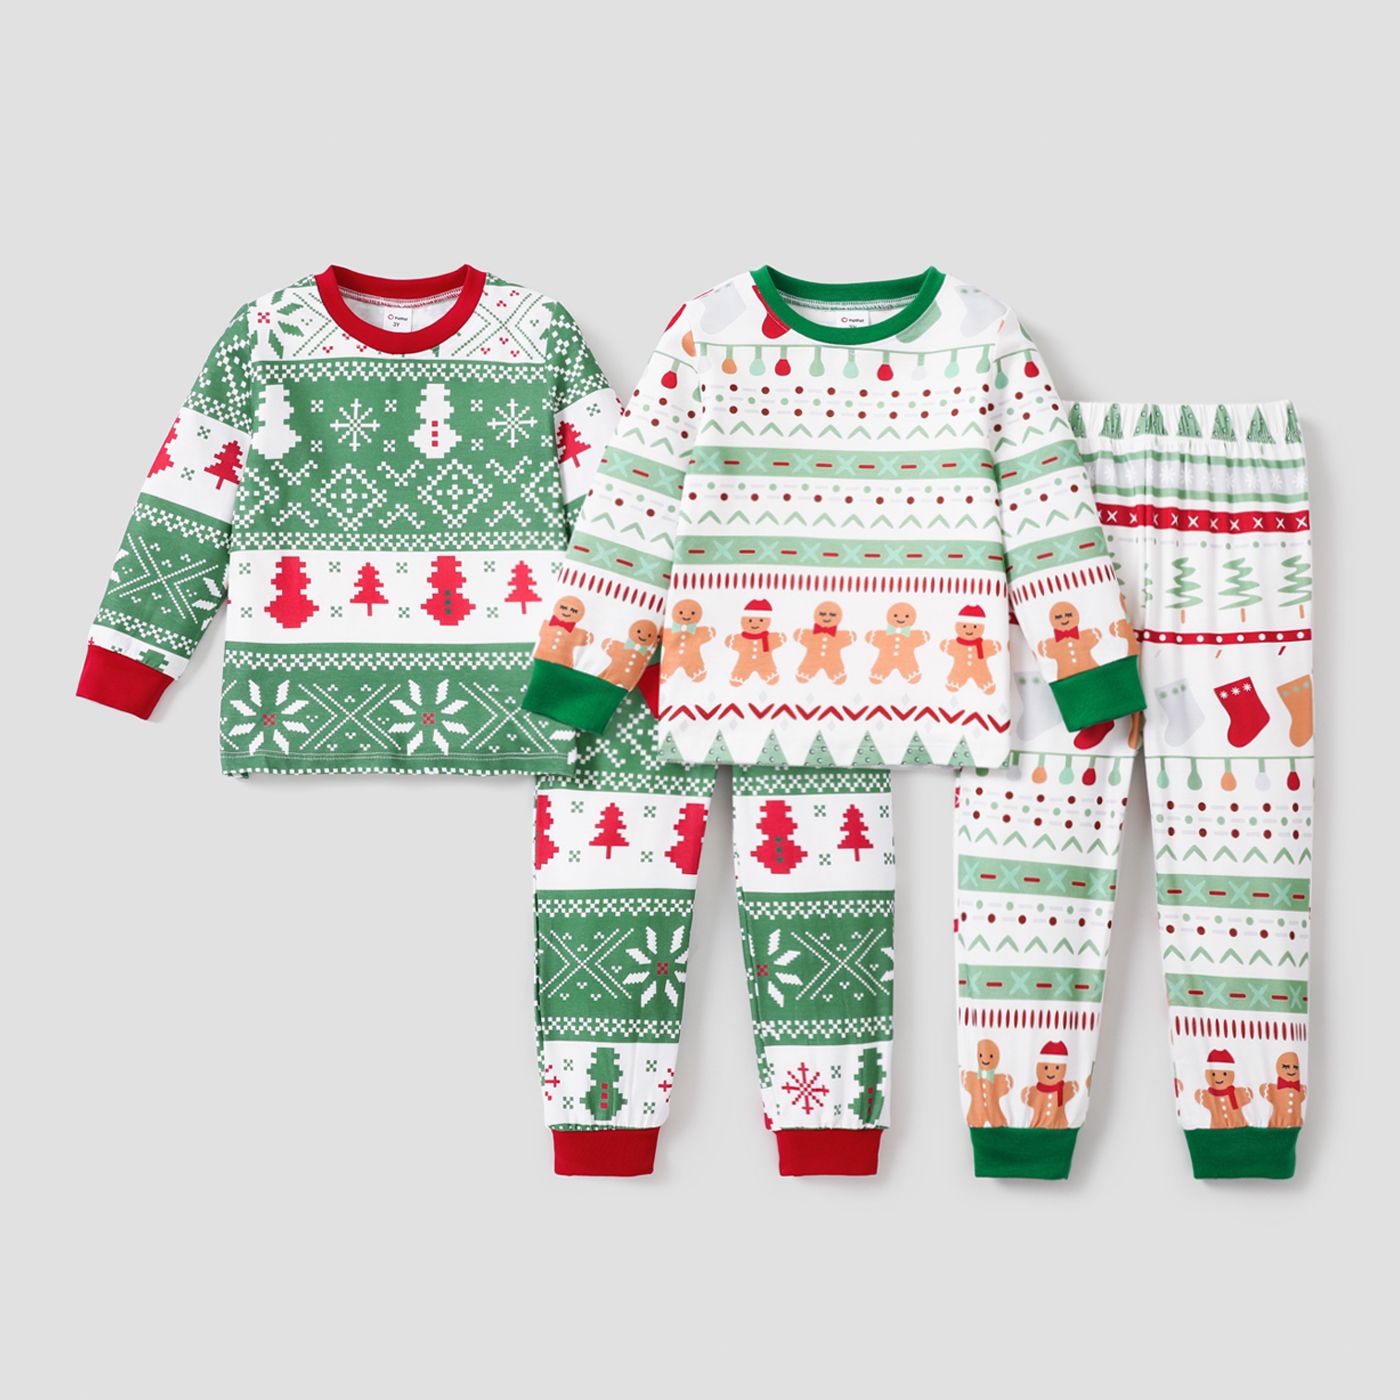 2件兒童/幼兒女孩/男孩聖誕印花睡衣套裝